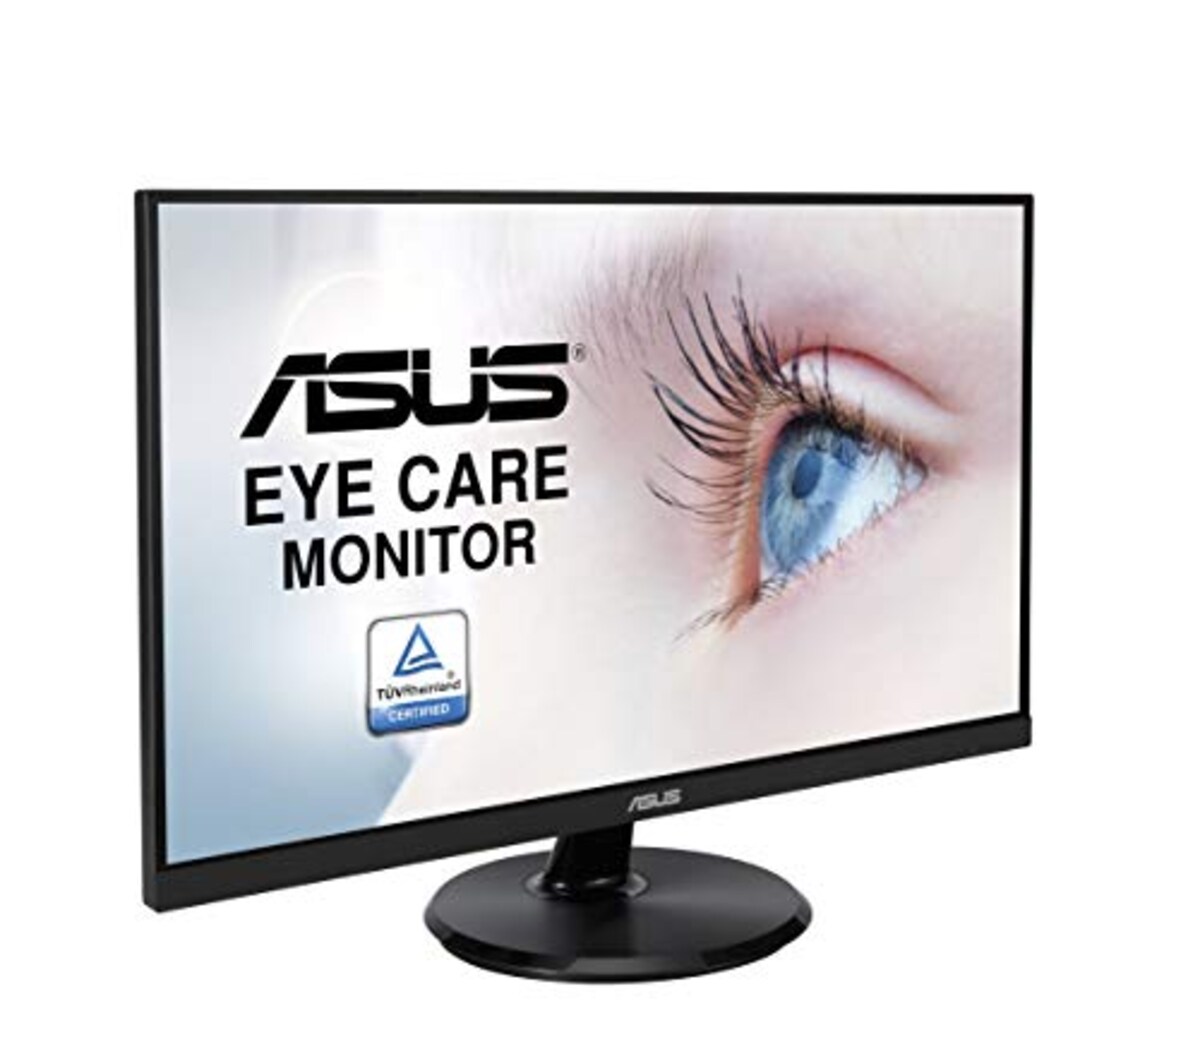  ASUS モニター Eye Care VA27DCP 27インチ / フルHD (1920 x 1080) / IPS / USB-C HDMI / 65W電力供給 / 75Hz / ブルーライト軽減 / フリッカフリー / VESA対応 / 国内正規品画像10 